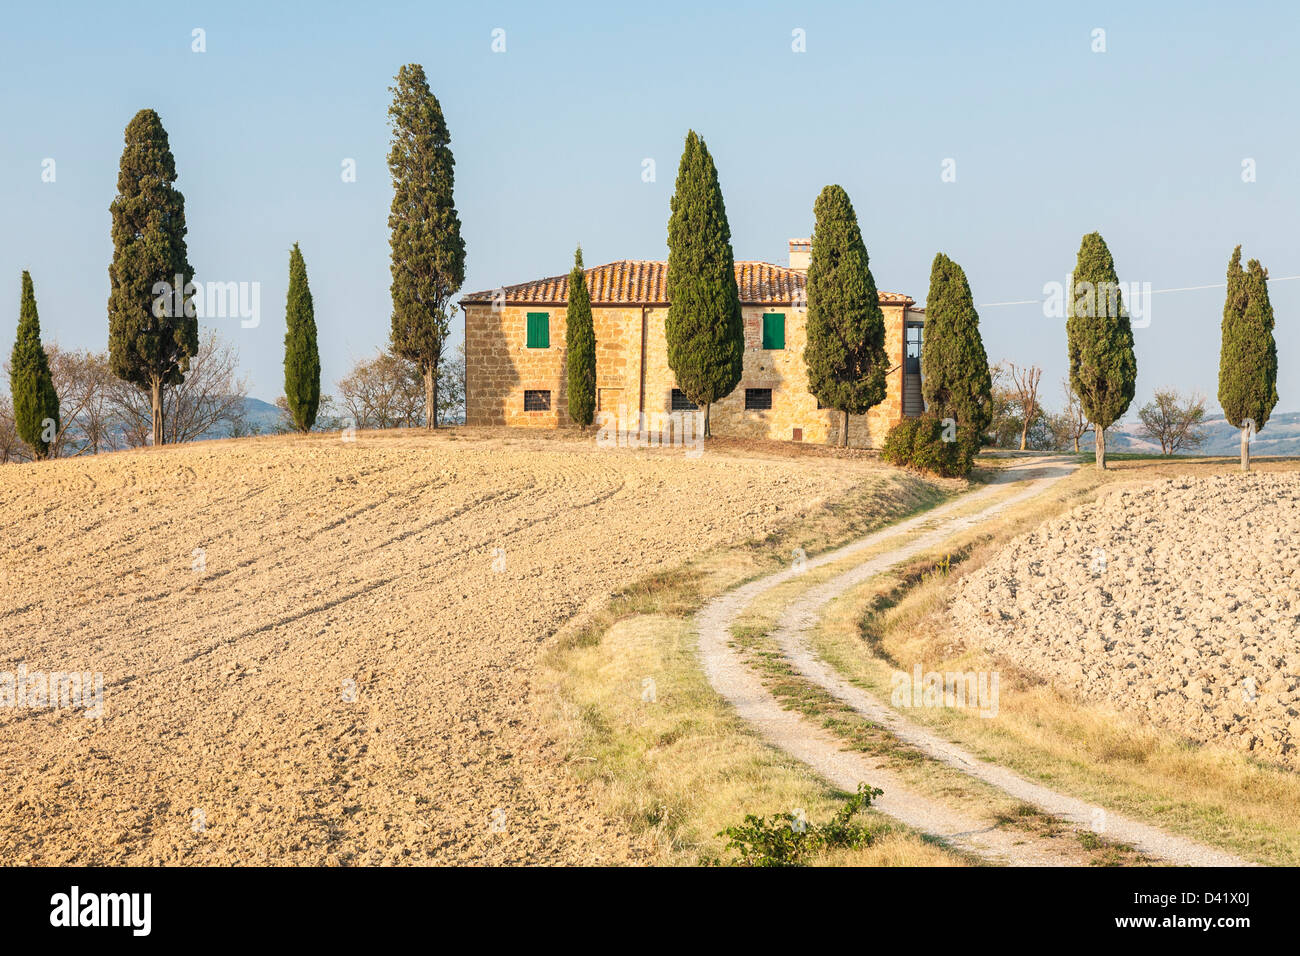 La via che conduce alla casa colonica, Val d'Orcia, Toscana, Italia Foto Stock